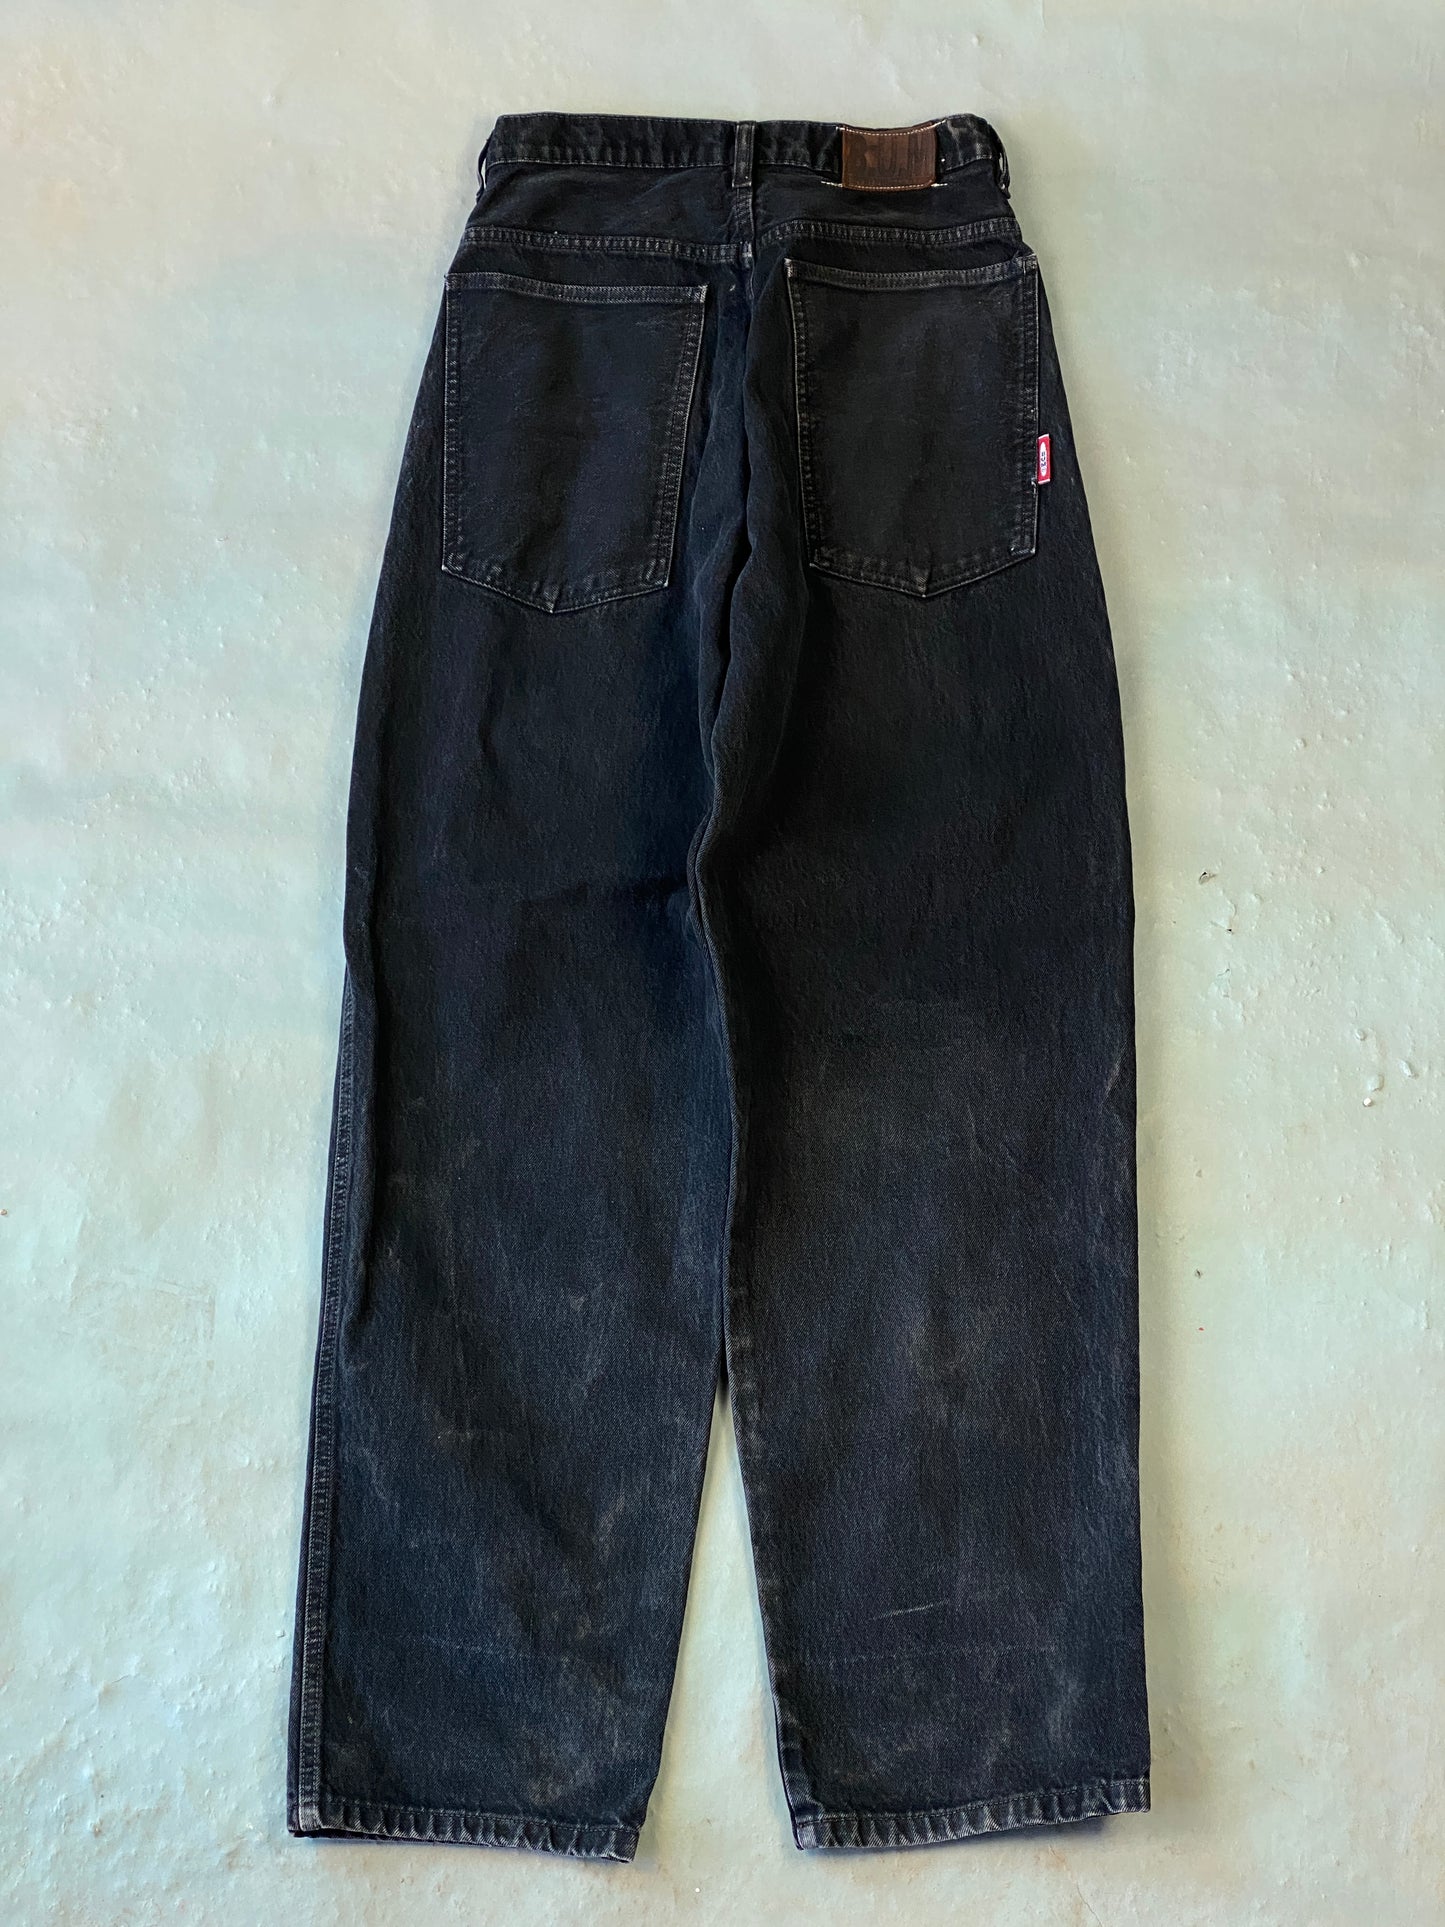 BUM Equiment Deim Vintage Jeans - 30